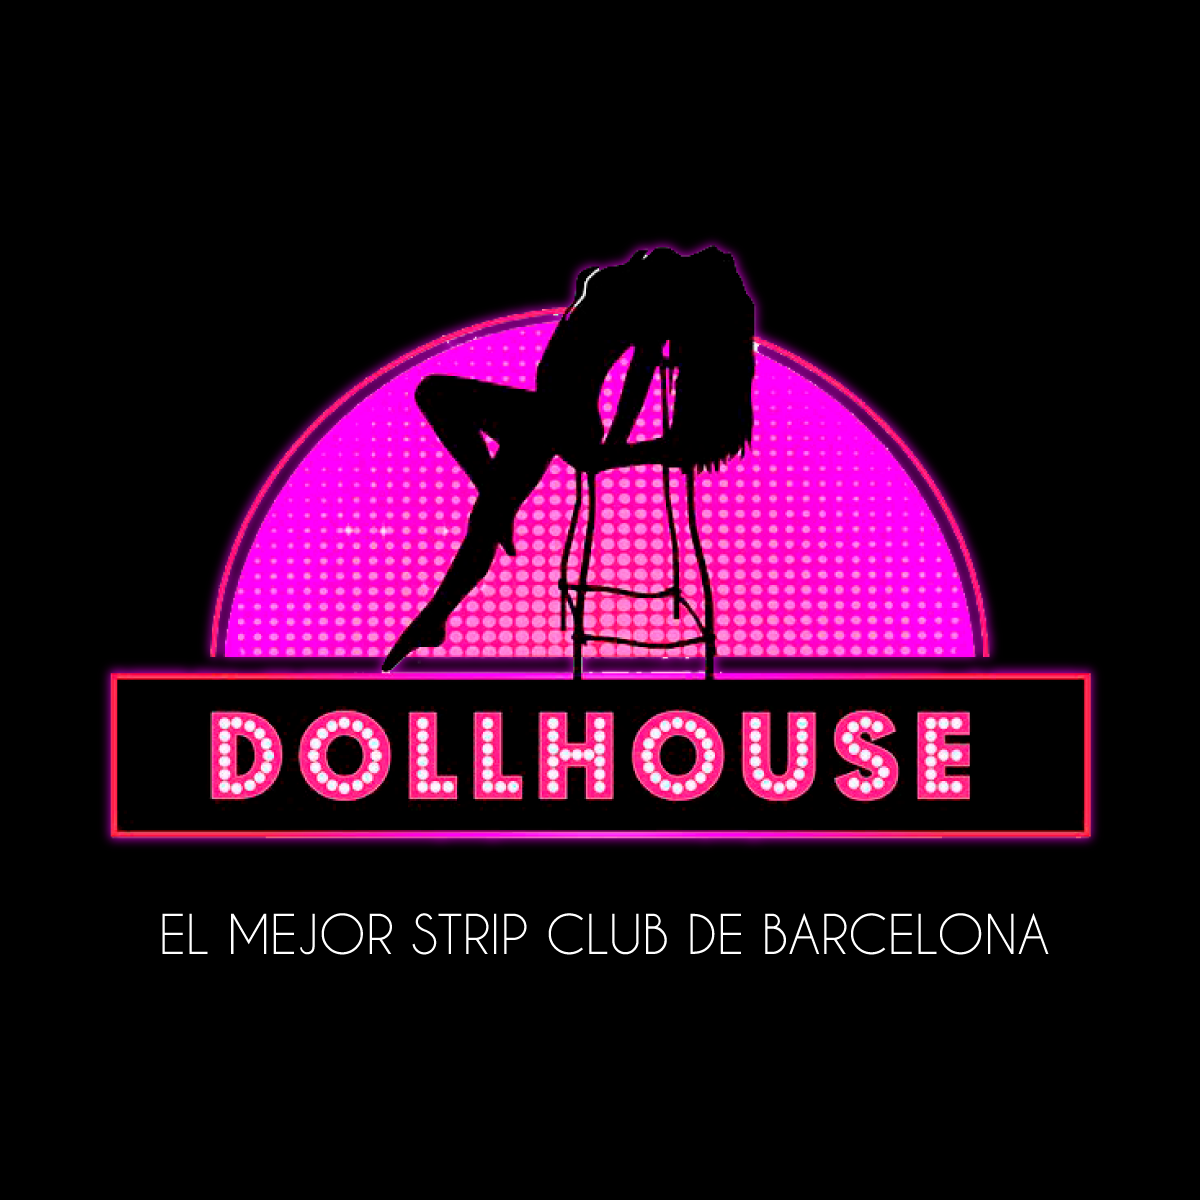 Dollhouse barcelona